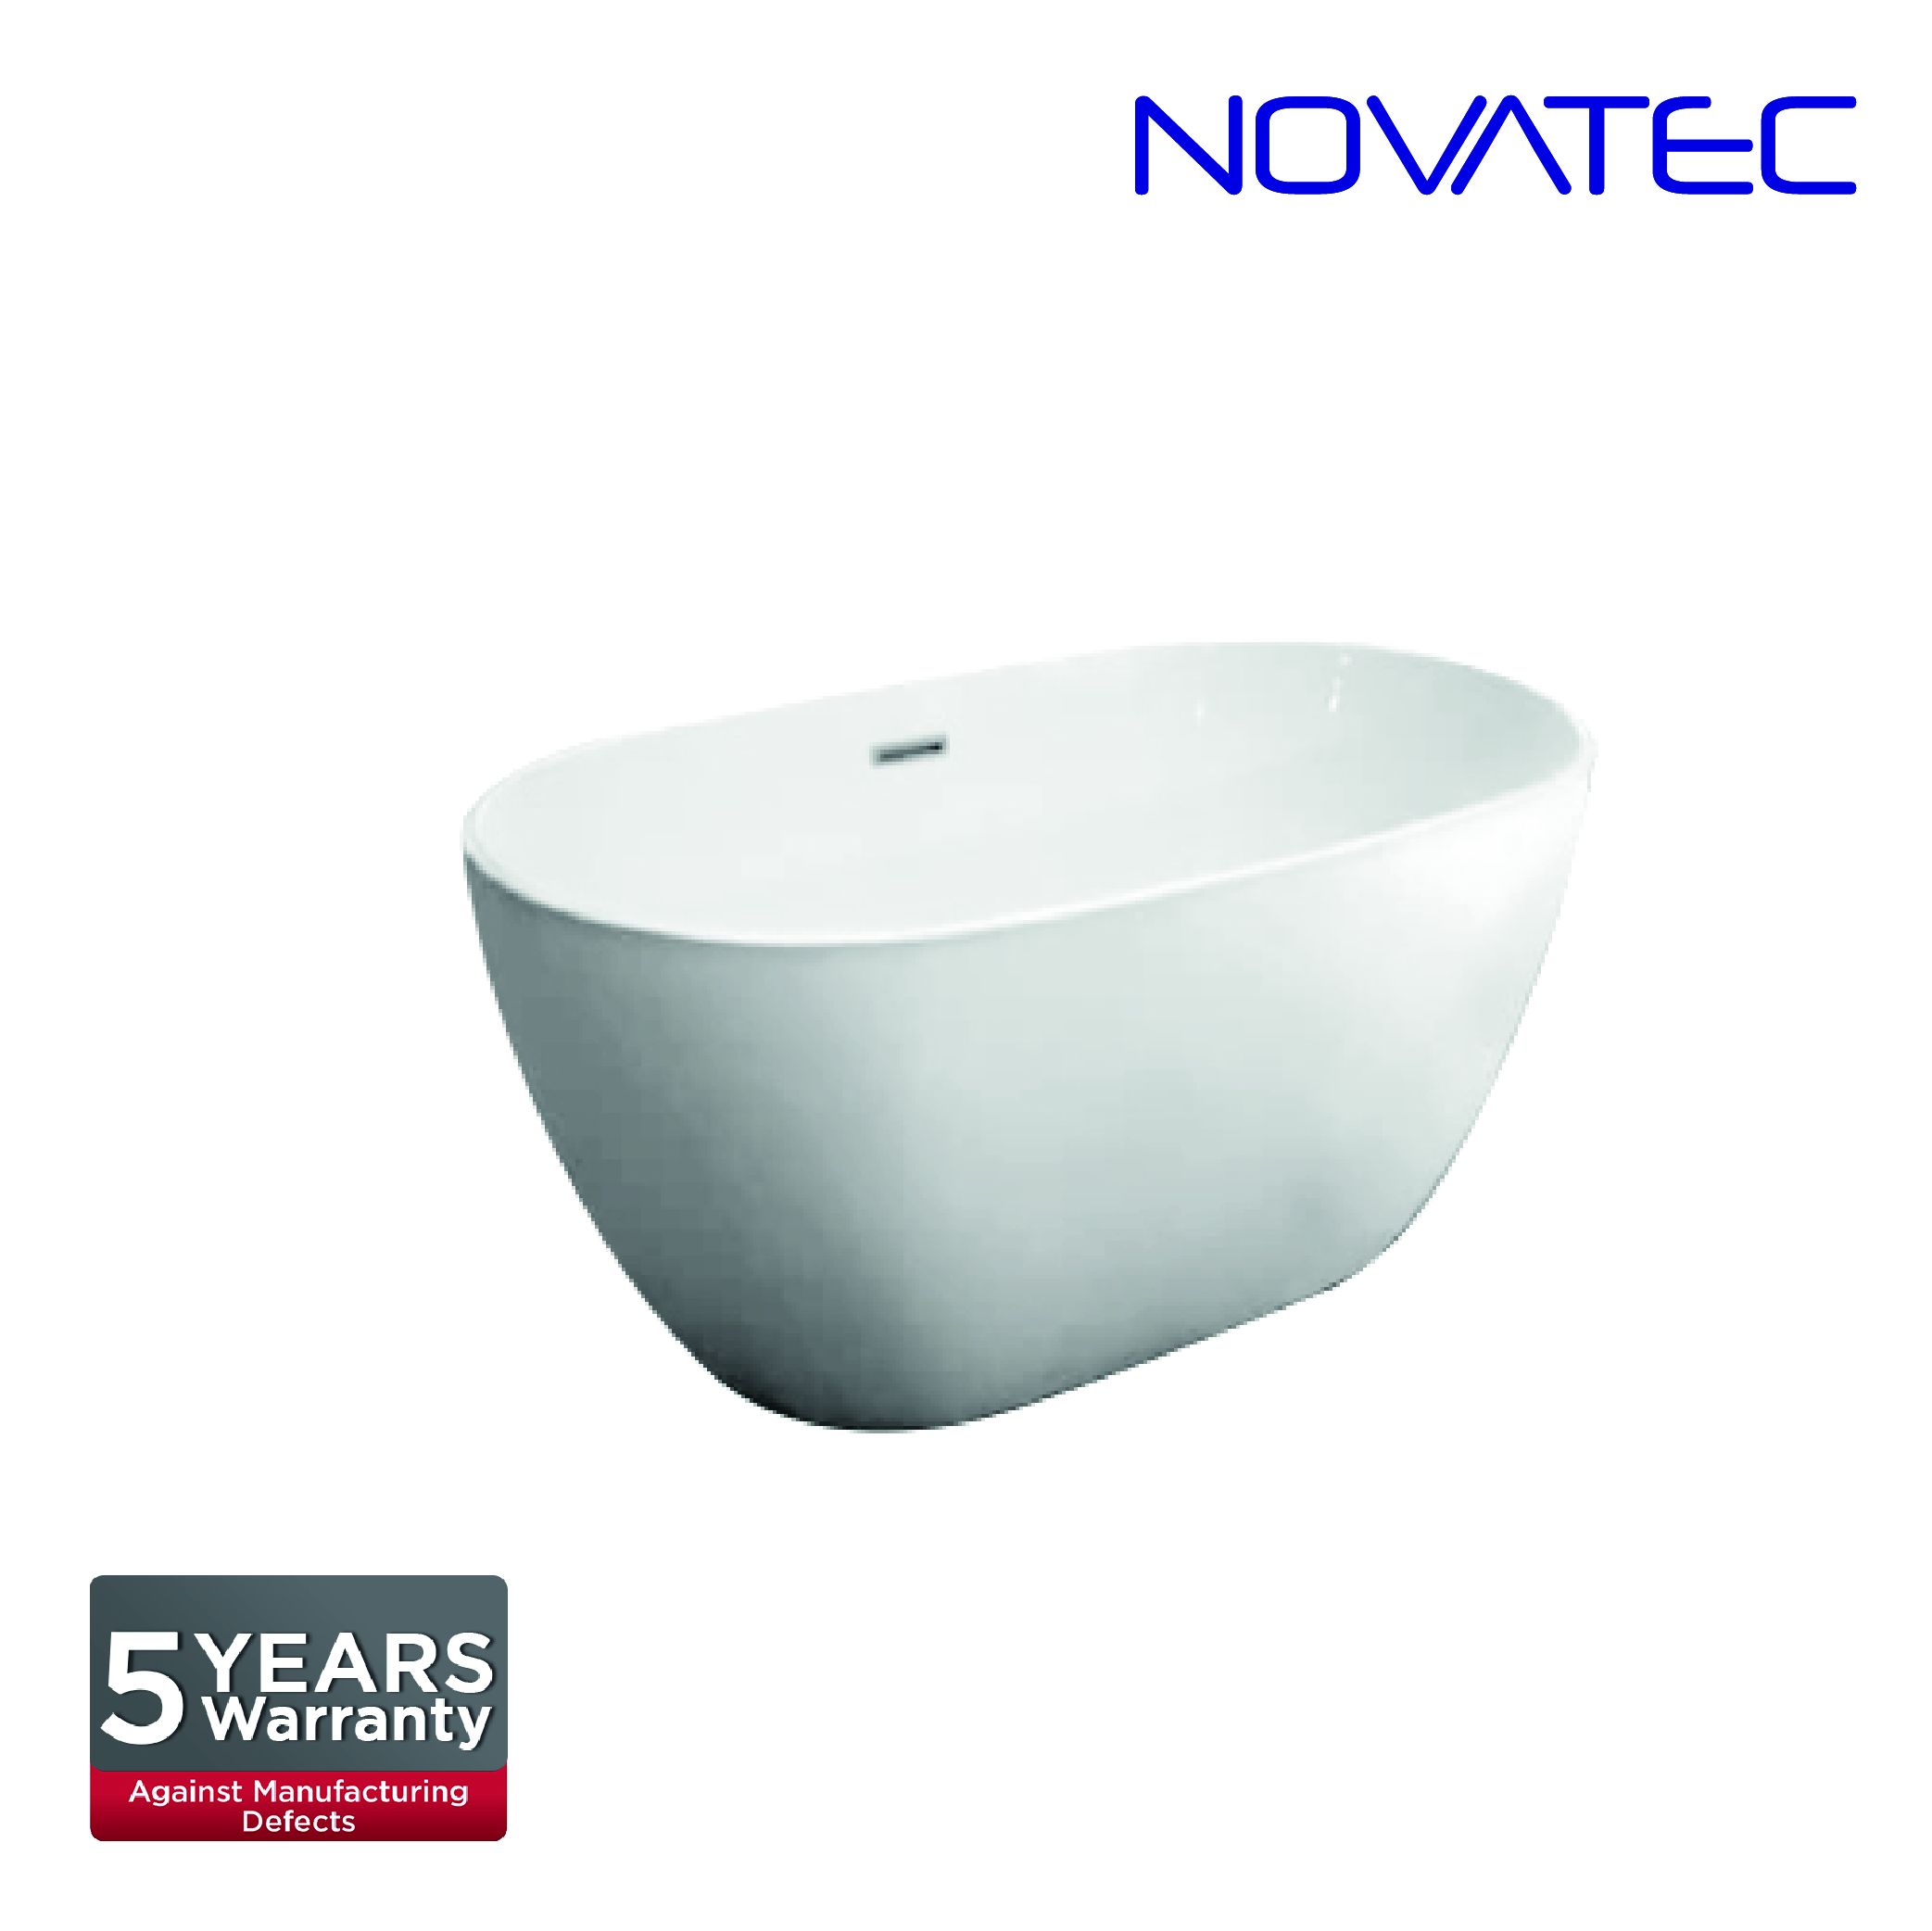 Novatec SW Geneva Bath Tub BT 160014D